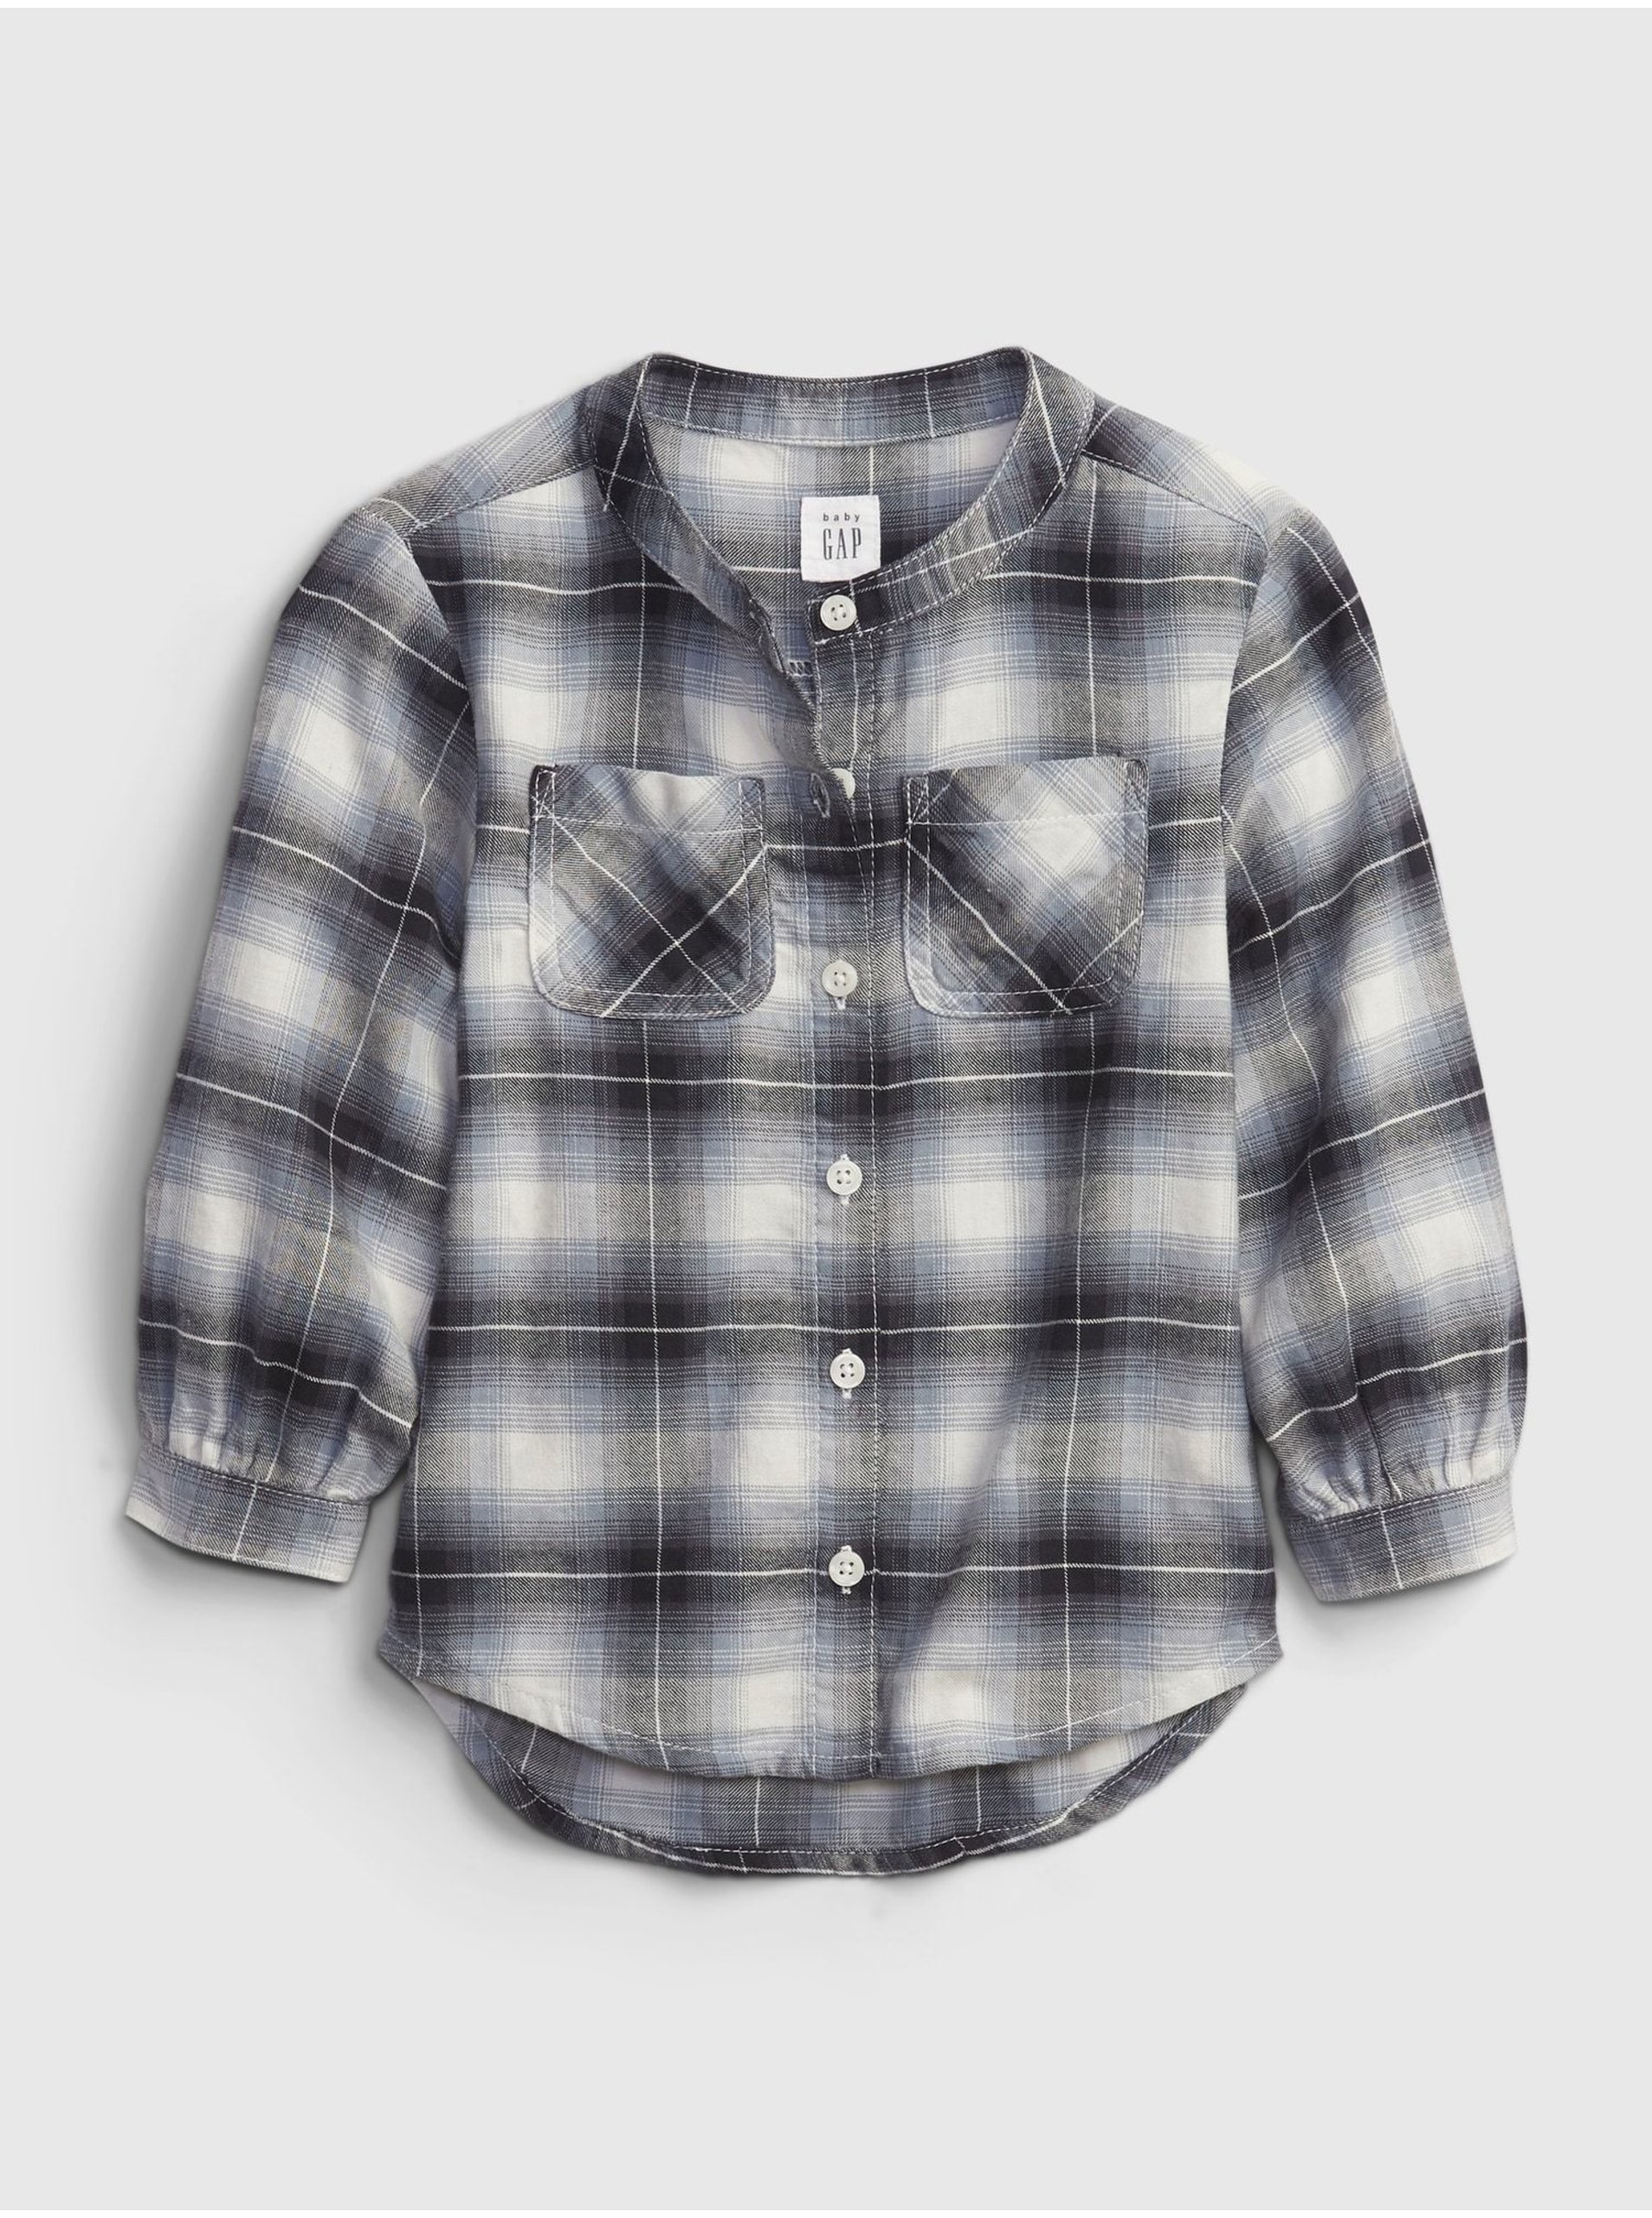 E-shop Černá holčičí košile oversized flannel shirt